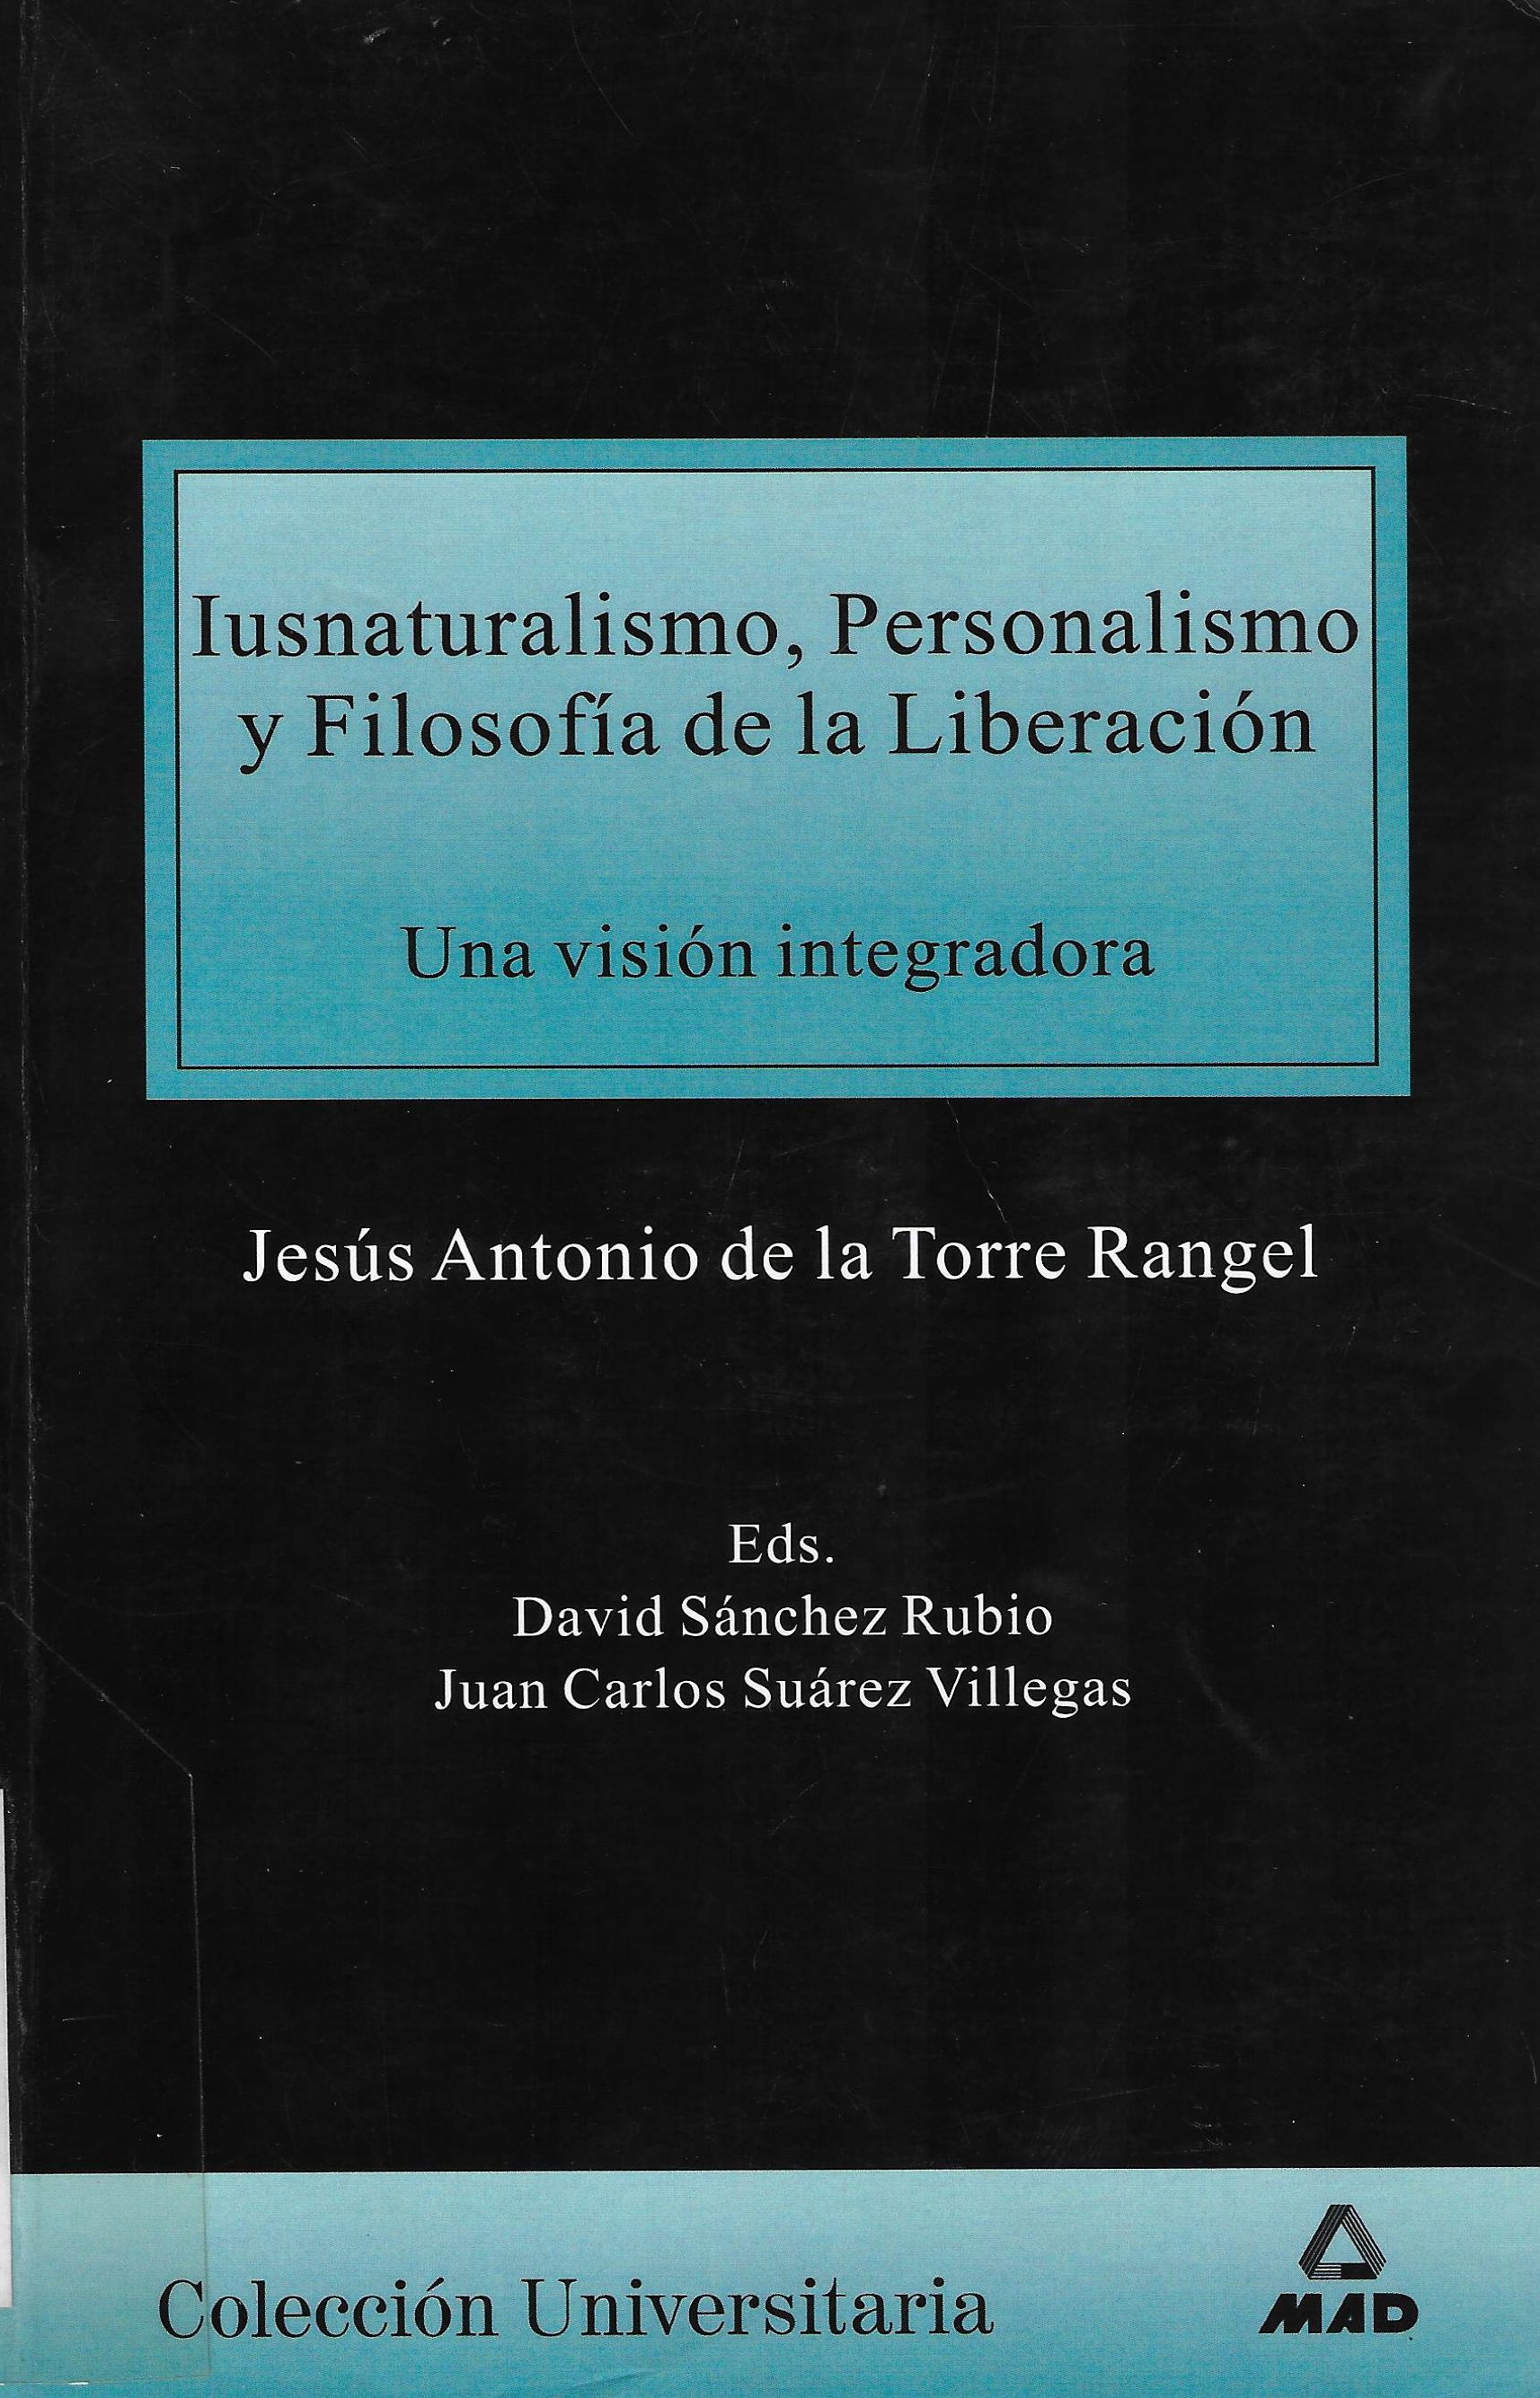 Imagen de portada del libro Iusnaturalismo, personalismo y filosofía de la liberación